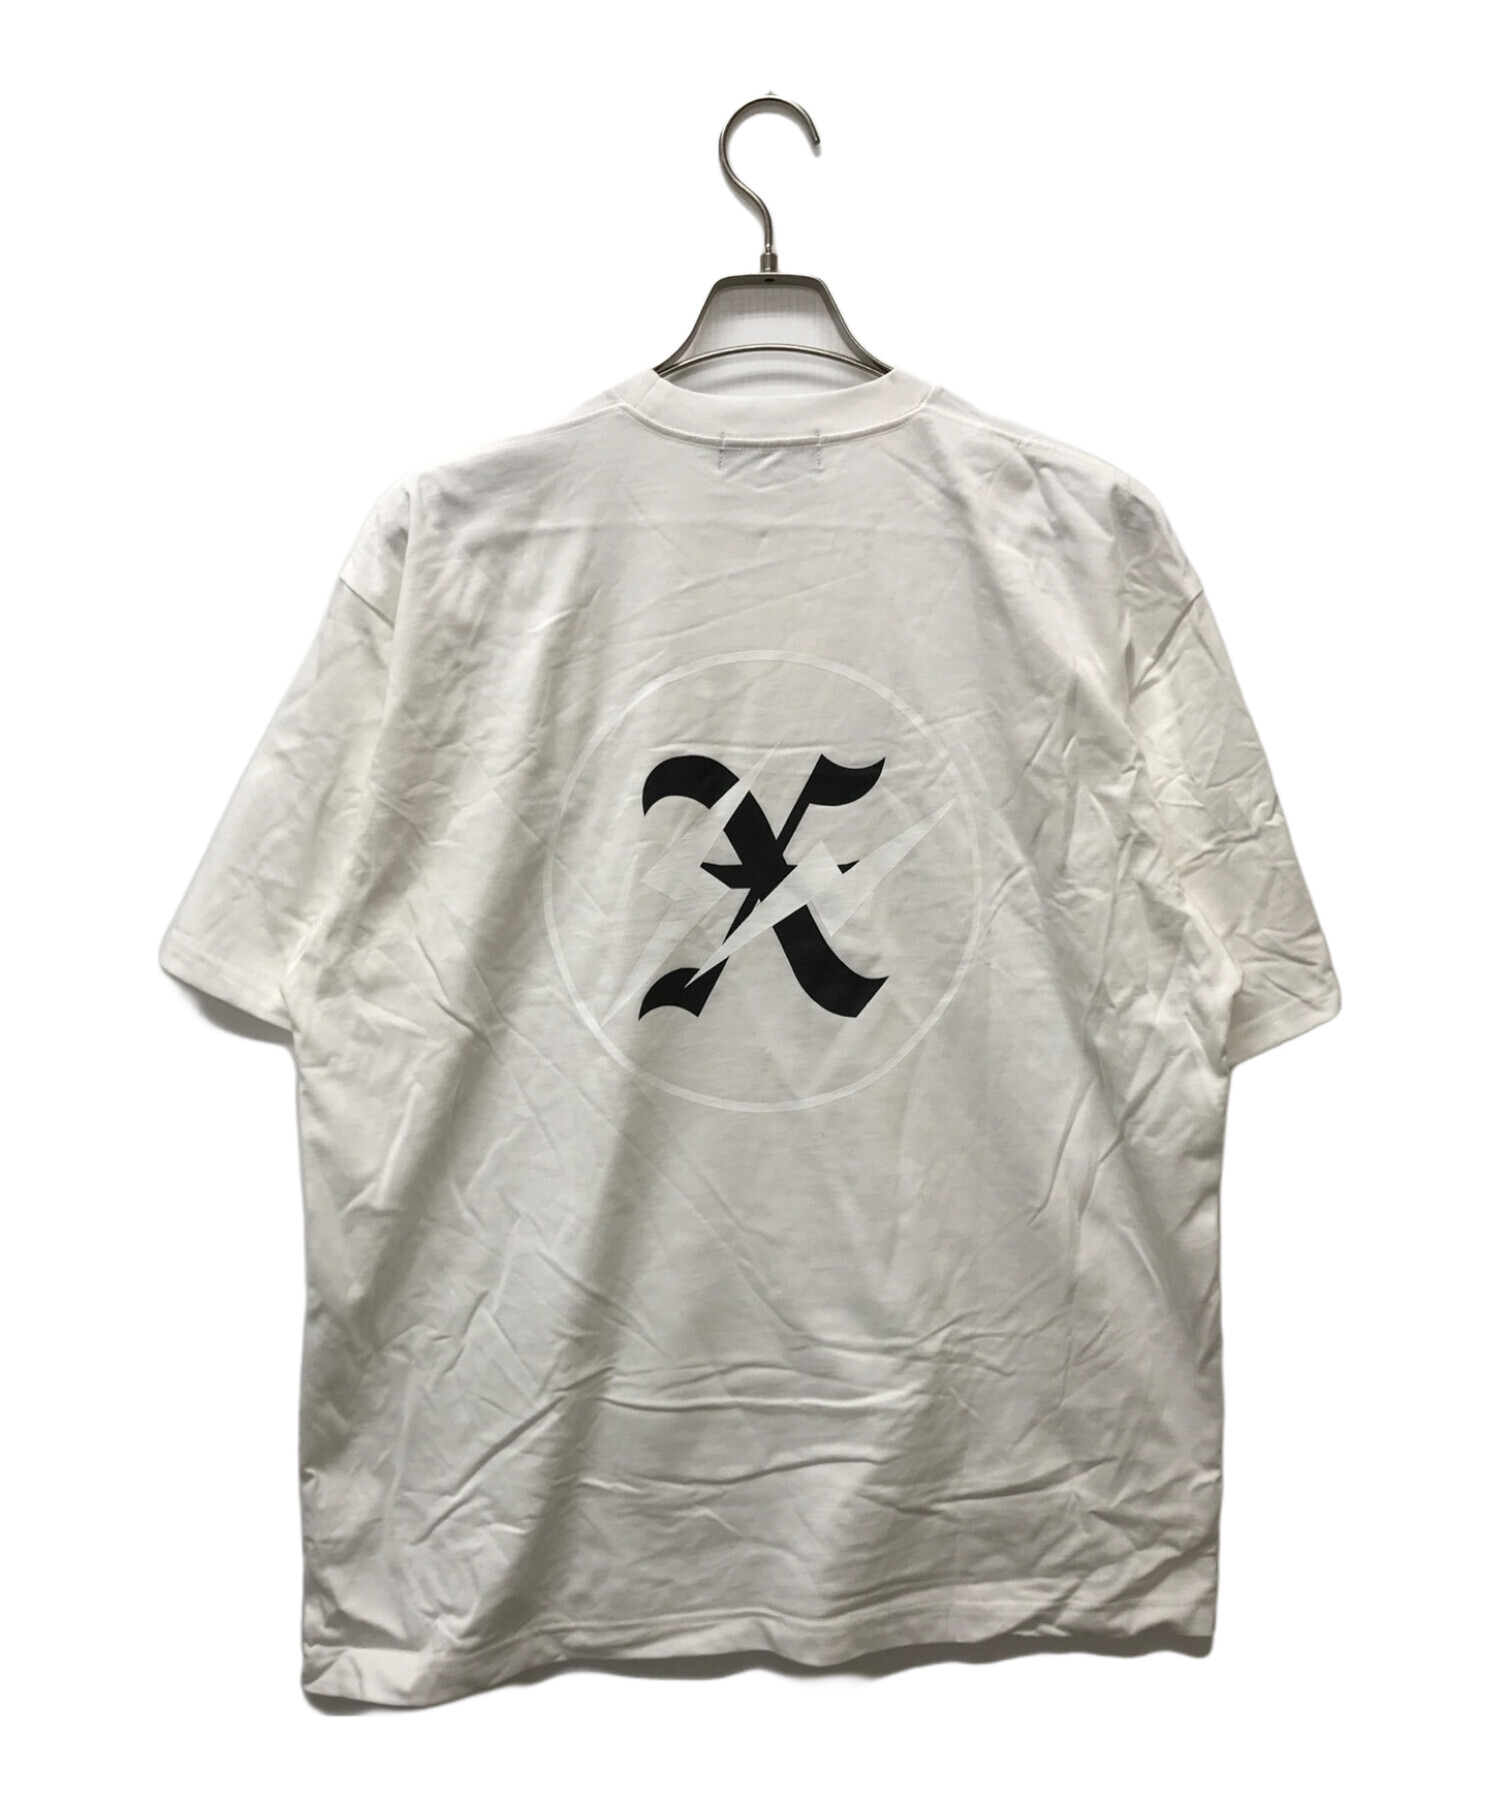 GOD SELECTION XXX (ゴッドセレクショントリプルエックス) FRAGMENT DESIGN (フラグメントデザイン) Tシャツ  ホワイト サイズ:XL 未使用品